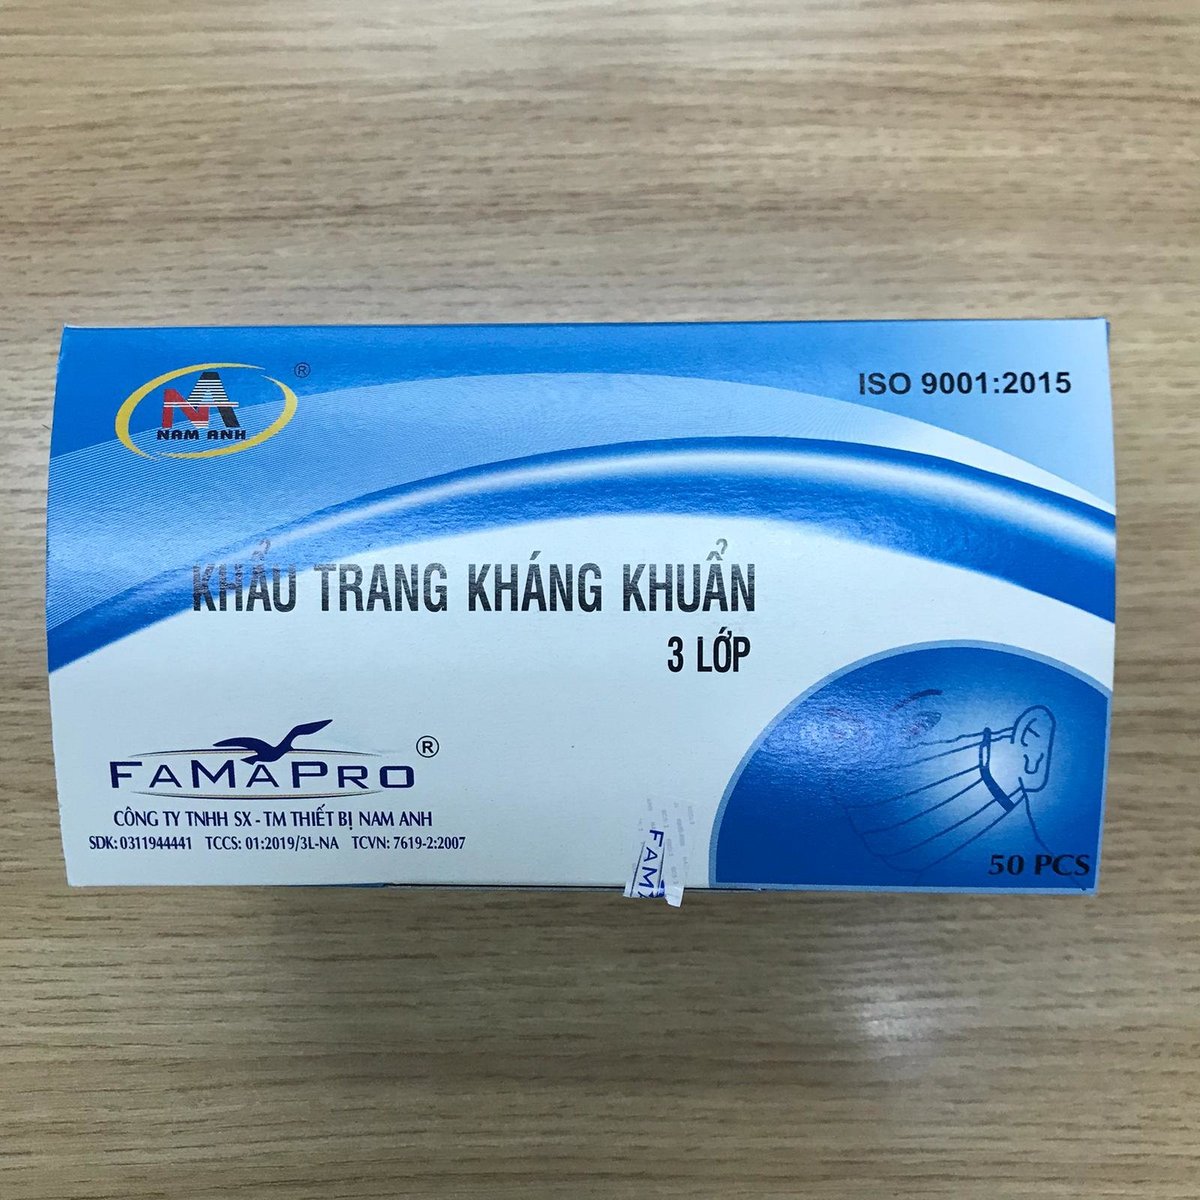 越南製造 Famapro 3層一次性口罩50個 (175X90mm) [平行進口產品]